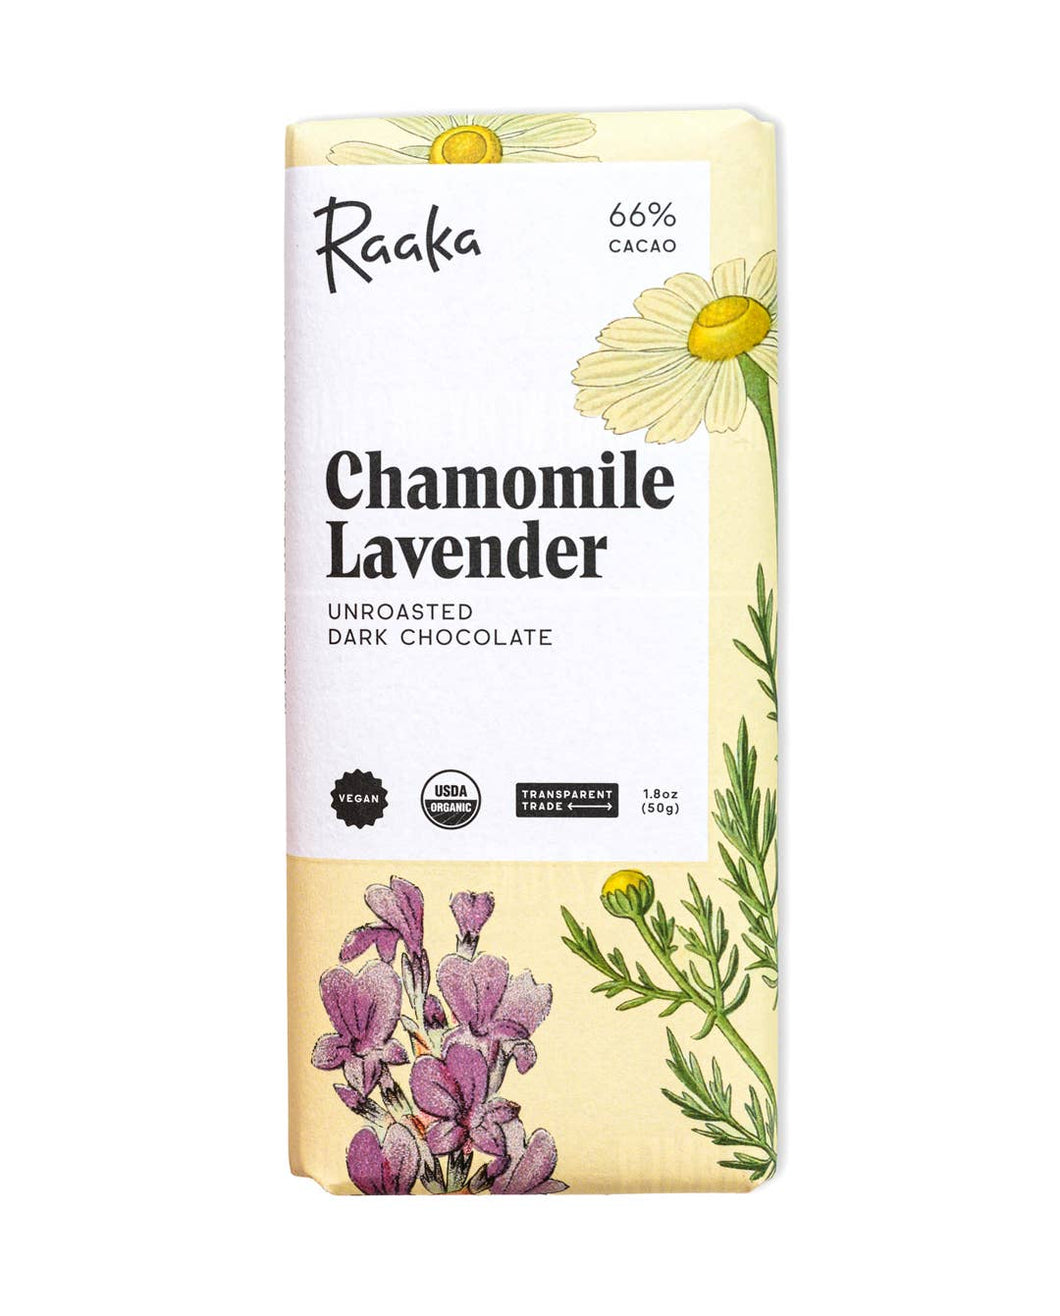 66% Chamomile Lavender Bar - Spring Easter Limited